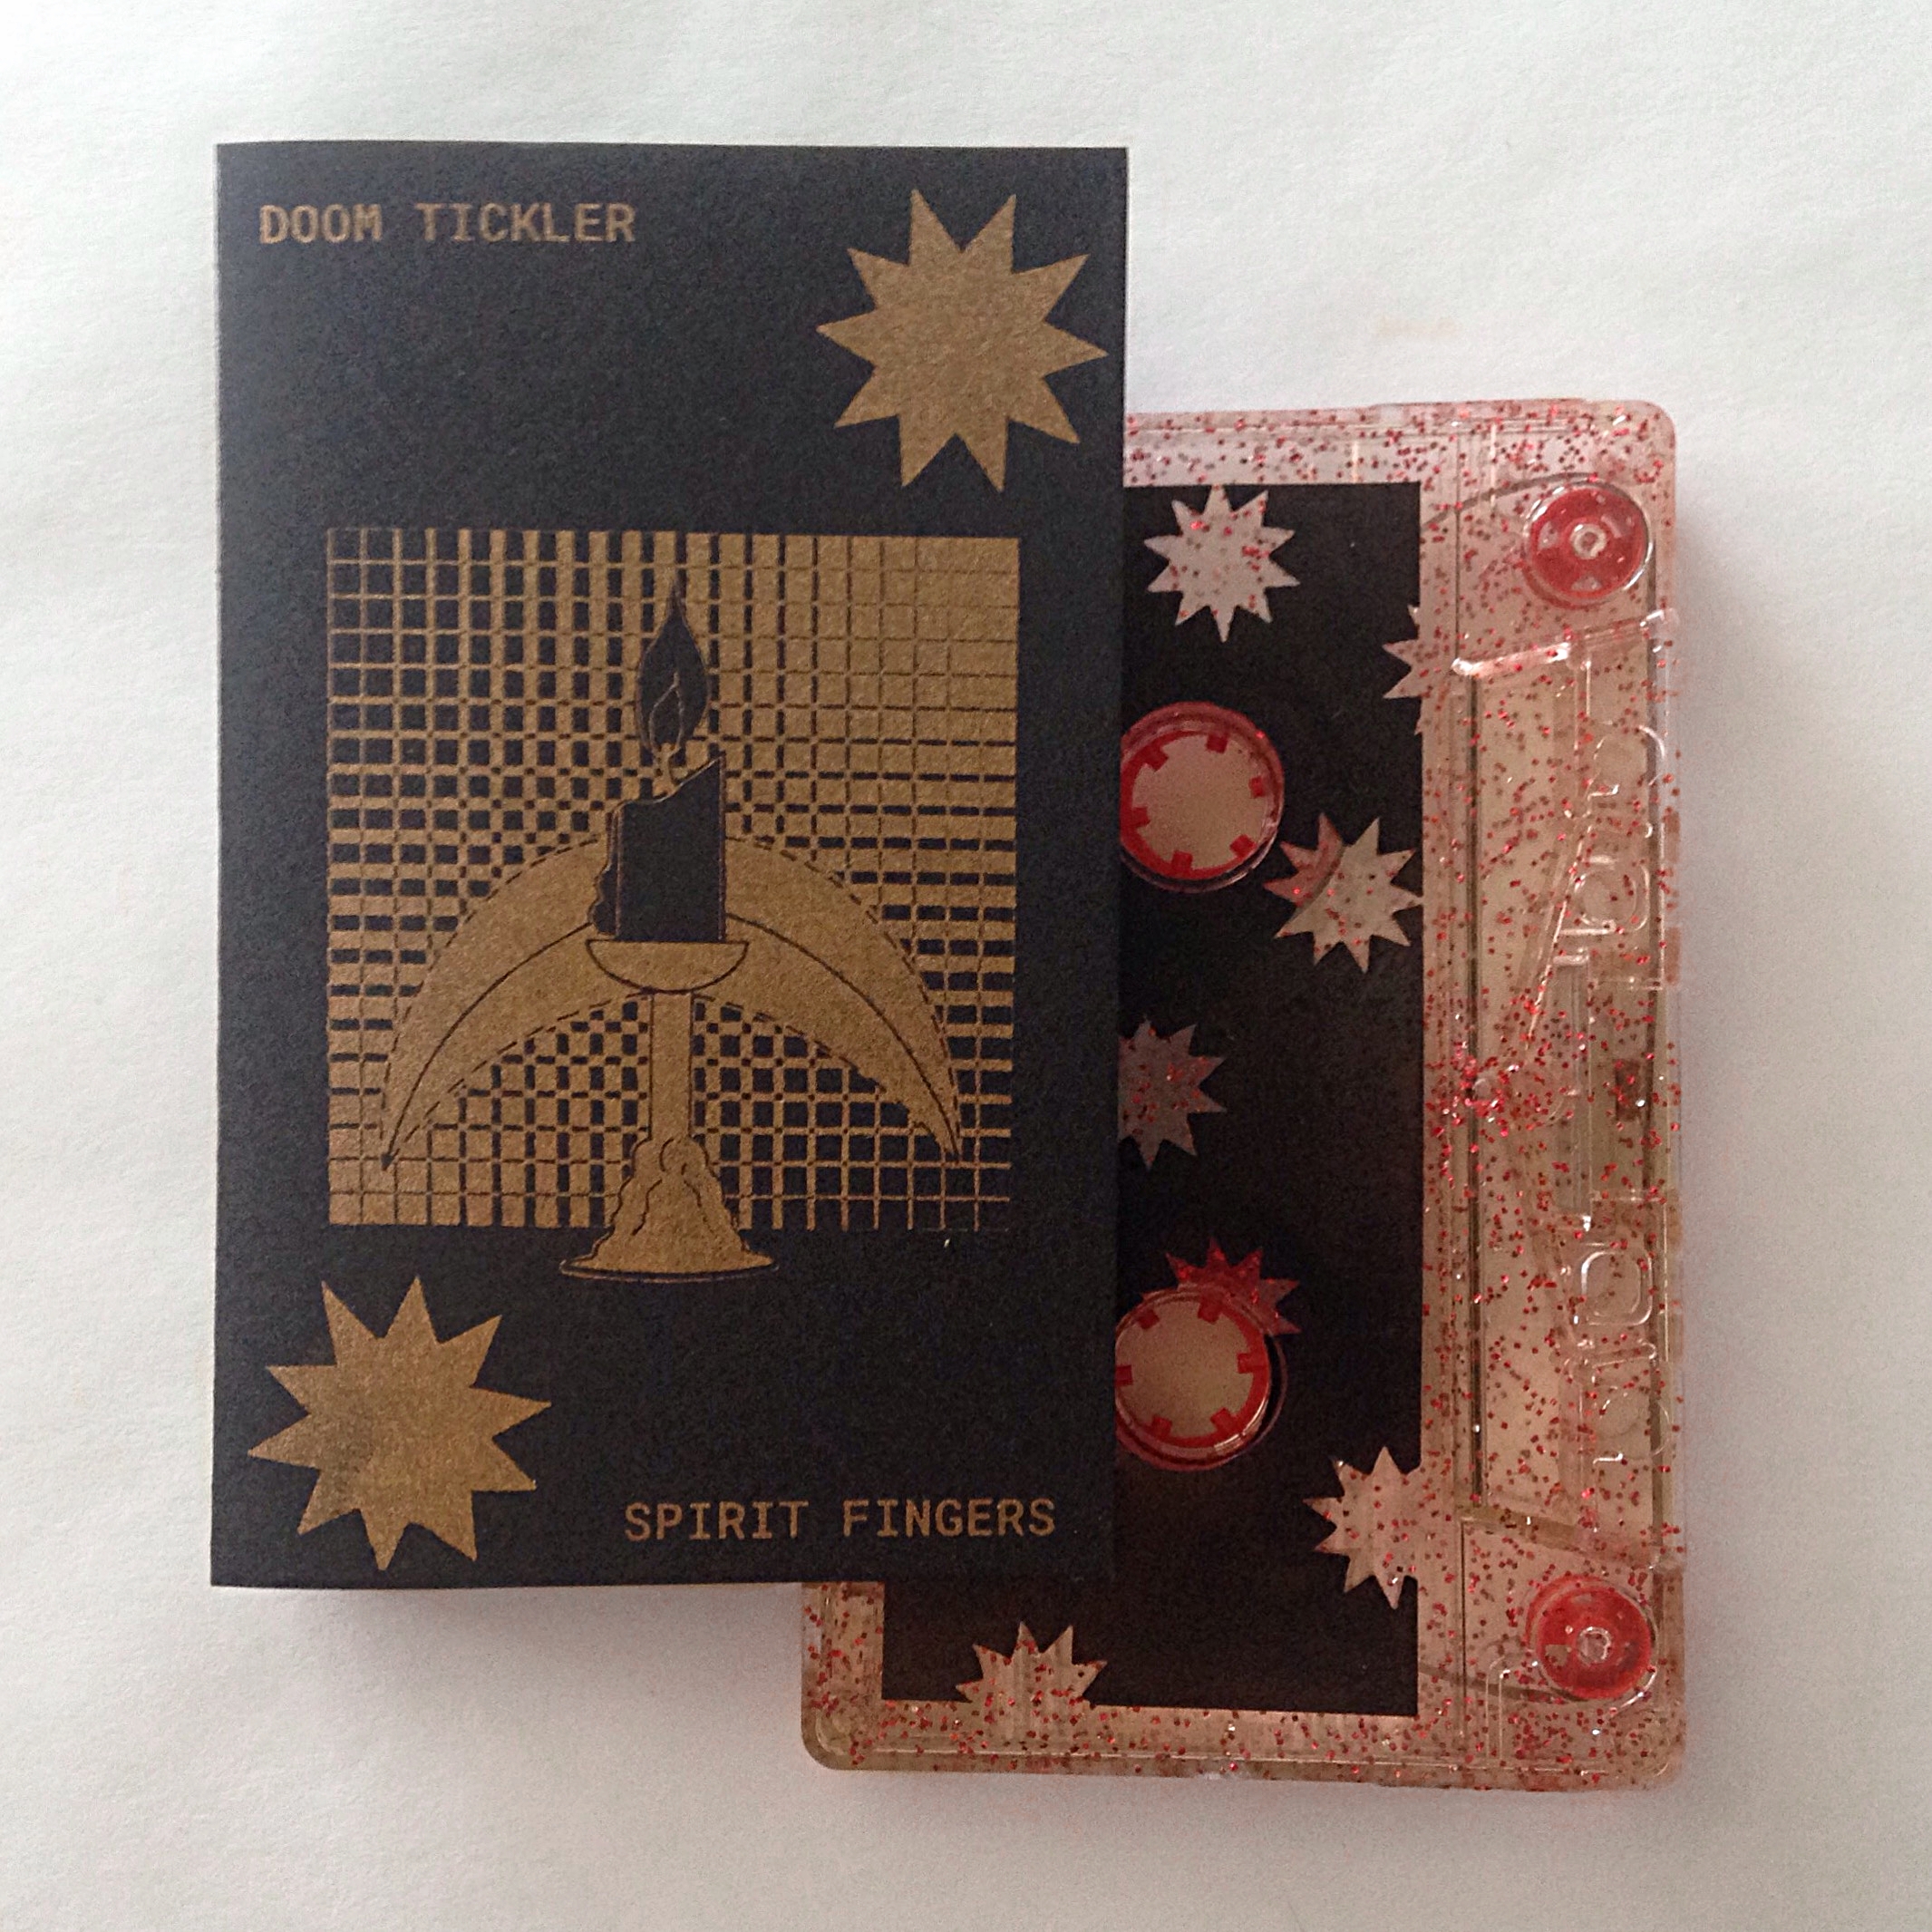  Doom Tickler  Spirit Fingers cassette  cover, insert and tape imprint  Risograph printed  2017 